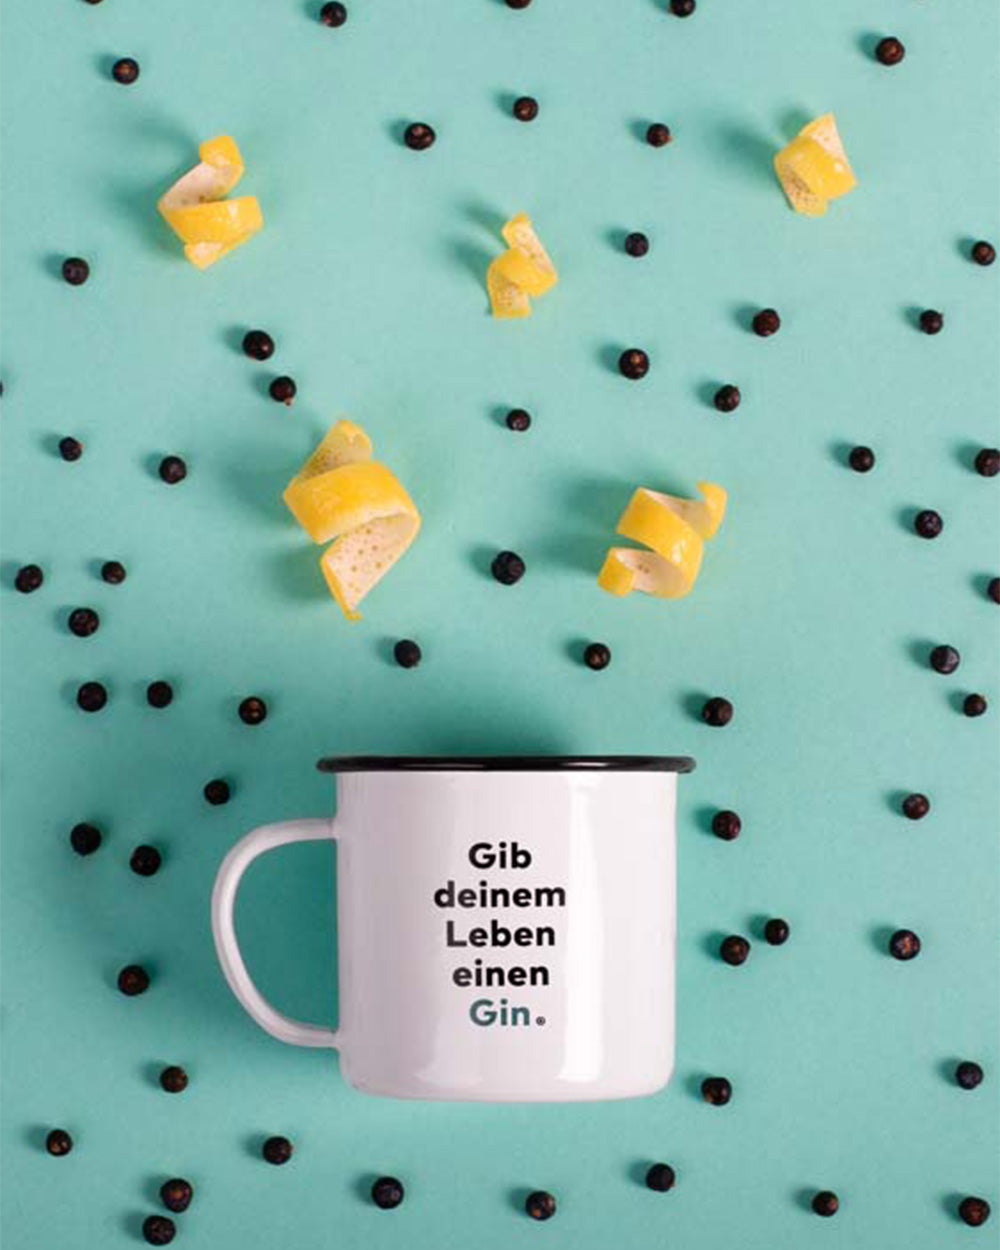 Bedruckte Tasse mit dem humorvollem Spruch: "Gib deinem Leben einen Gin."